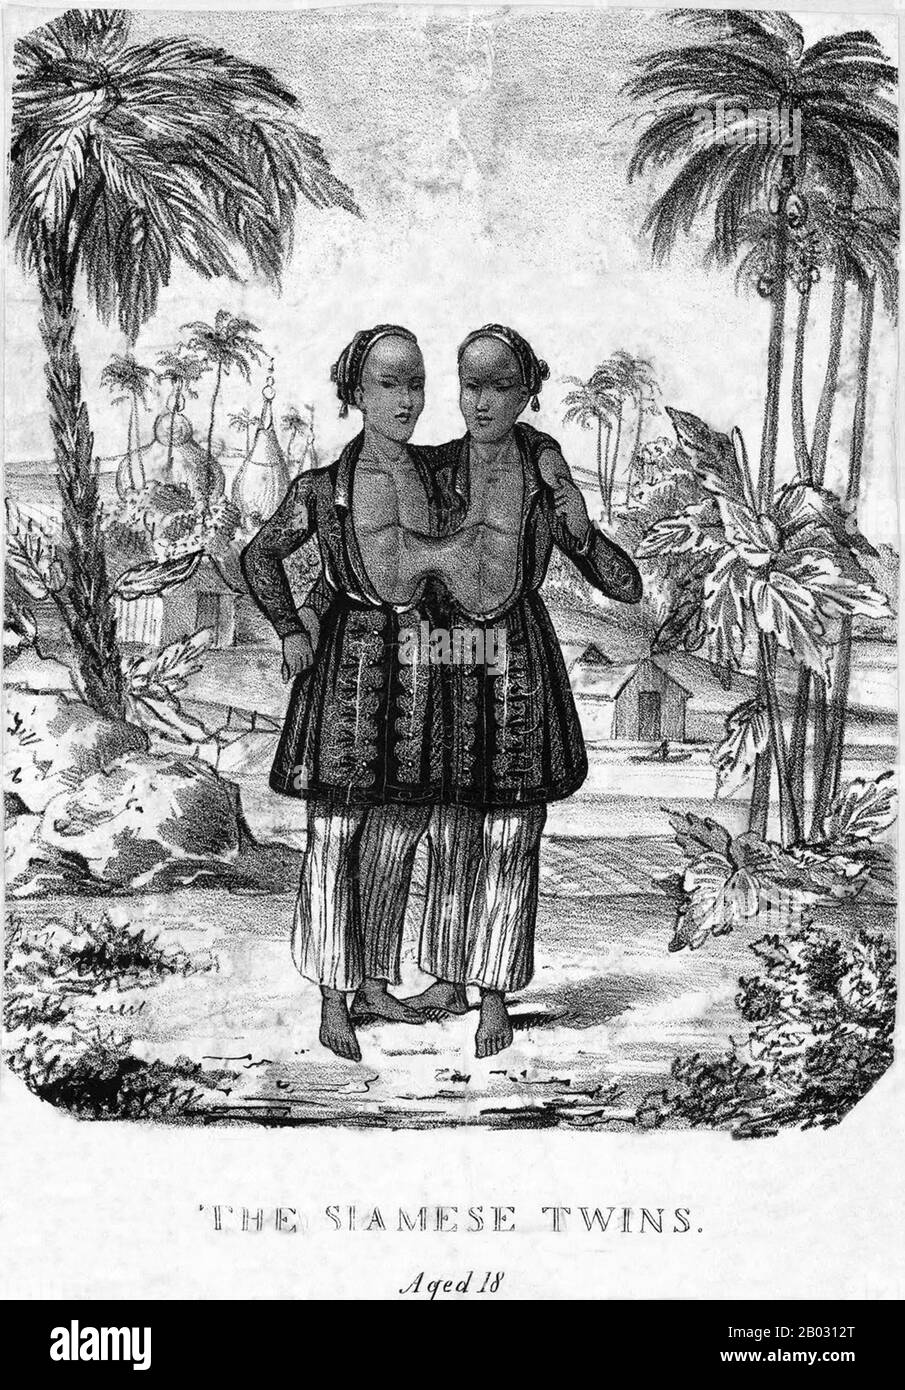 Chang und eng Bunker (* 11. Mai, † 17. Januar 1874) waren thailändisch-amerikanische Zwillingsbrüder, deren Zustand und Geburtsort die Grundlage für den Begriff "schiamesische Zwillinge" wurden. Die Bunkerbrüder wurden am 11. Mai im Königreich Siam (dem heutigen Thailand) in der Provinz Samut Songkram in der Nähe von Bangkok geboren. Ihr Fischervater war ein Chinesischai-Thailänder, während ihre Mutter Chinesisch-Malaysia war. Aufgrund ihres chinesischen Erbes wurden sie lokal als "Chinese Twins" bekannt. Die Brüder wurden am Sternum durch ein kleines Stück Knorpel verbunden, und obwohl ihre Leber verschmolzen war, waren sie wir Stockfoto